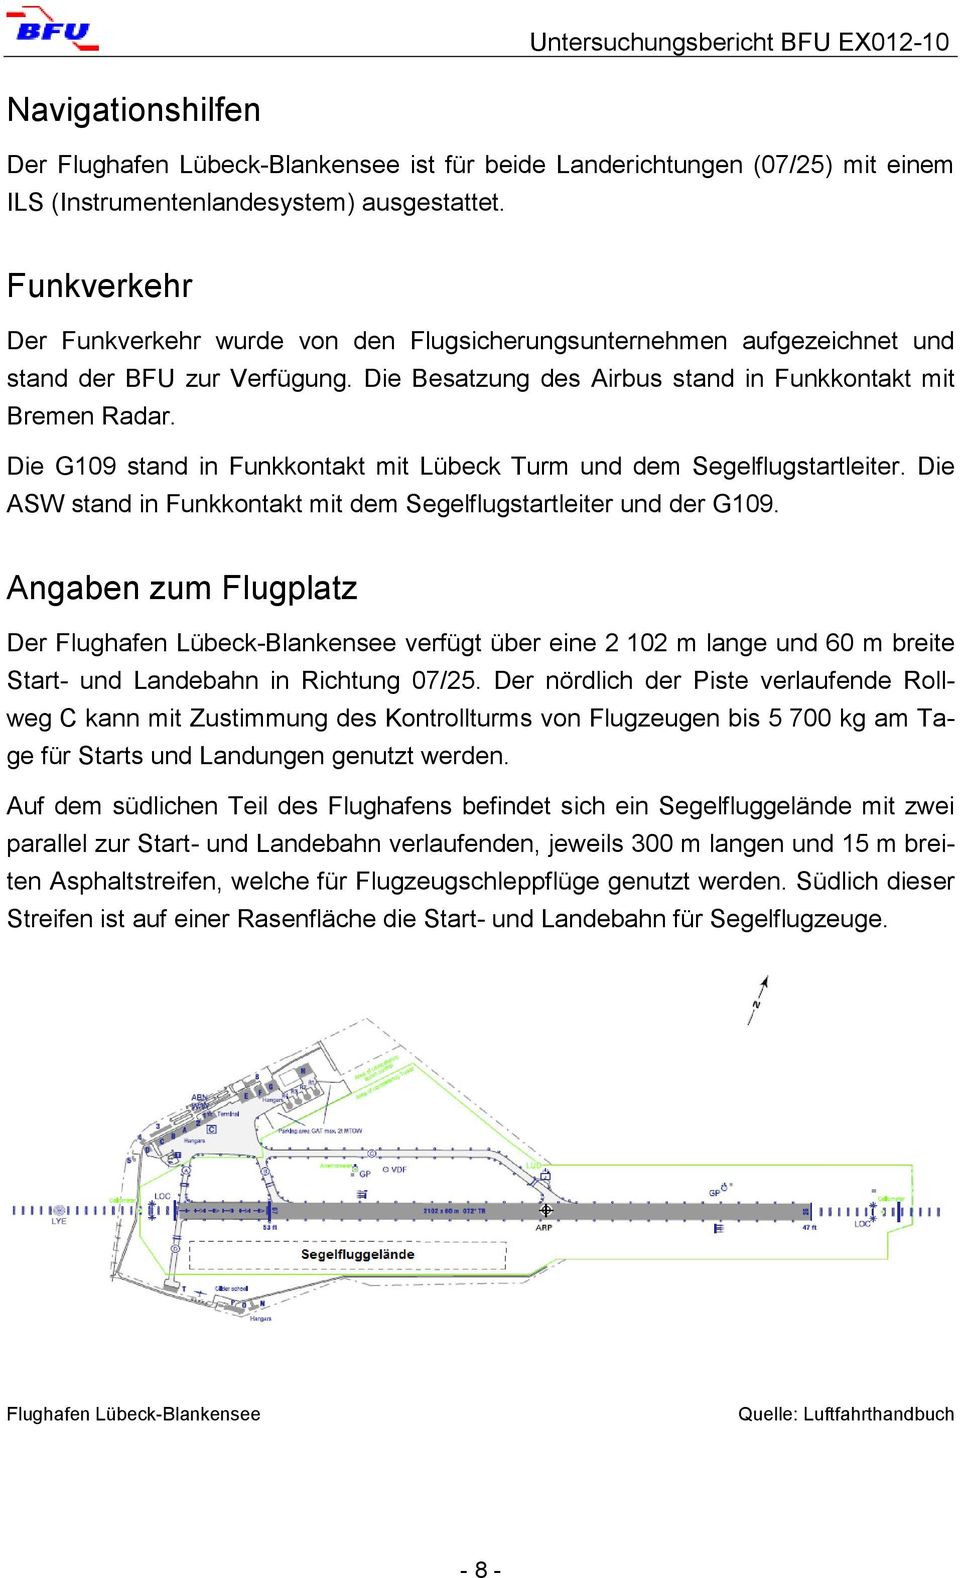 Die G109 stand in Funkkontakt mit Lübeck Turm und dem Segelflugstartleiter. Die ASW stand in Funkkontakt mit dem Segelflugstartleiter und der G109.